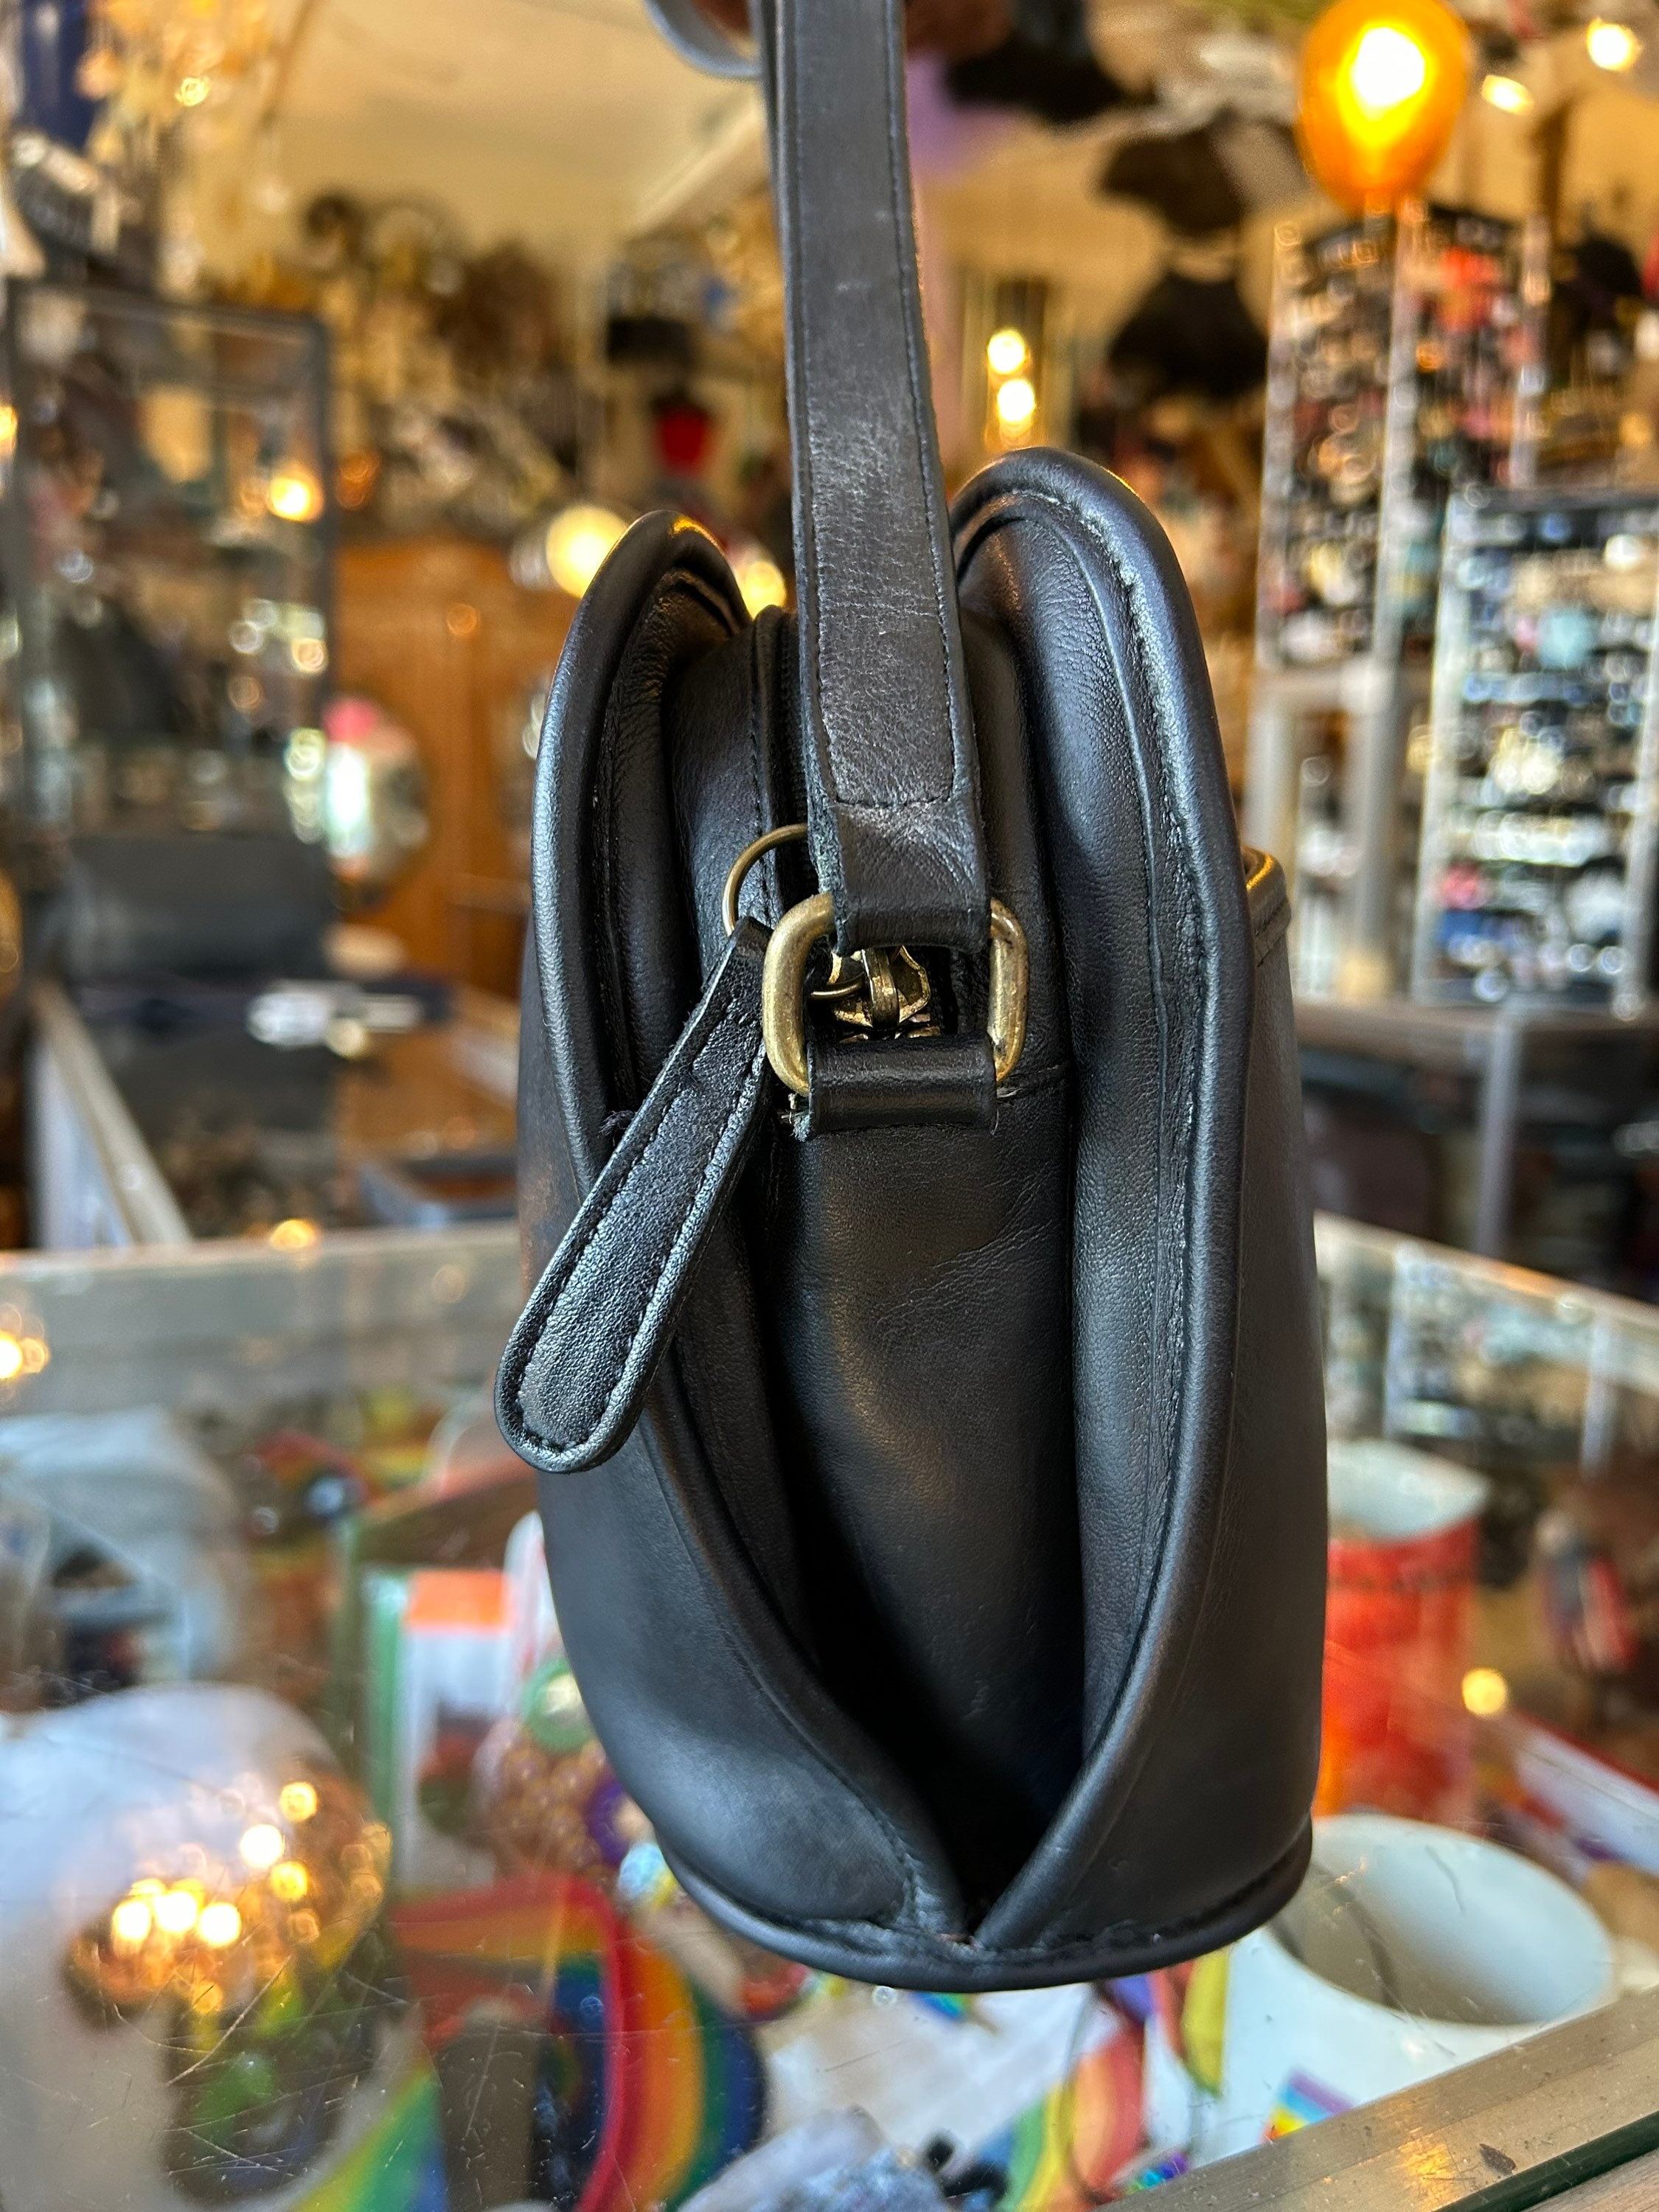 Vintage Black Coach Handbags 